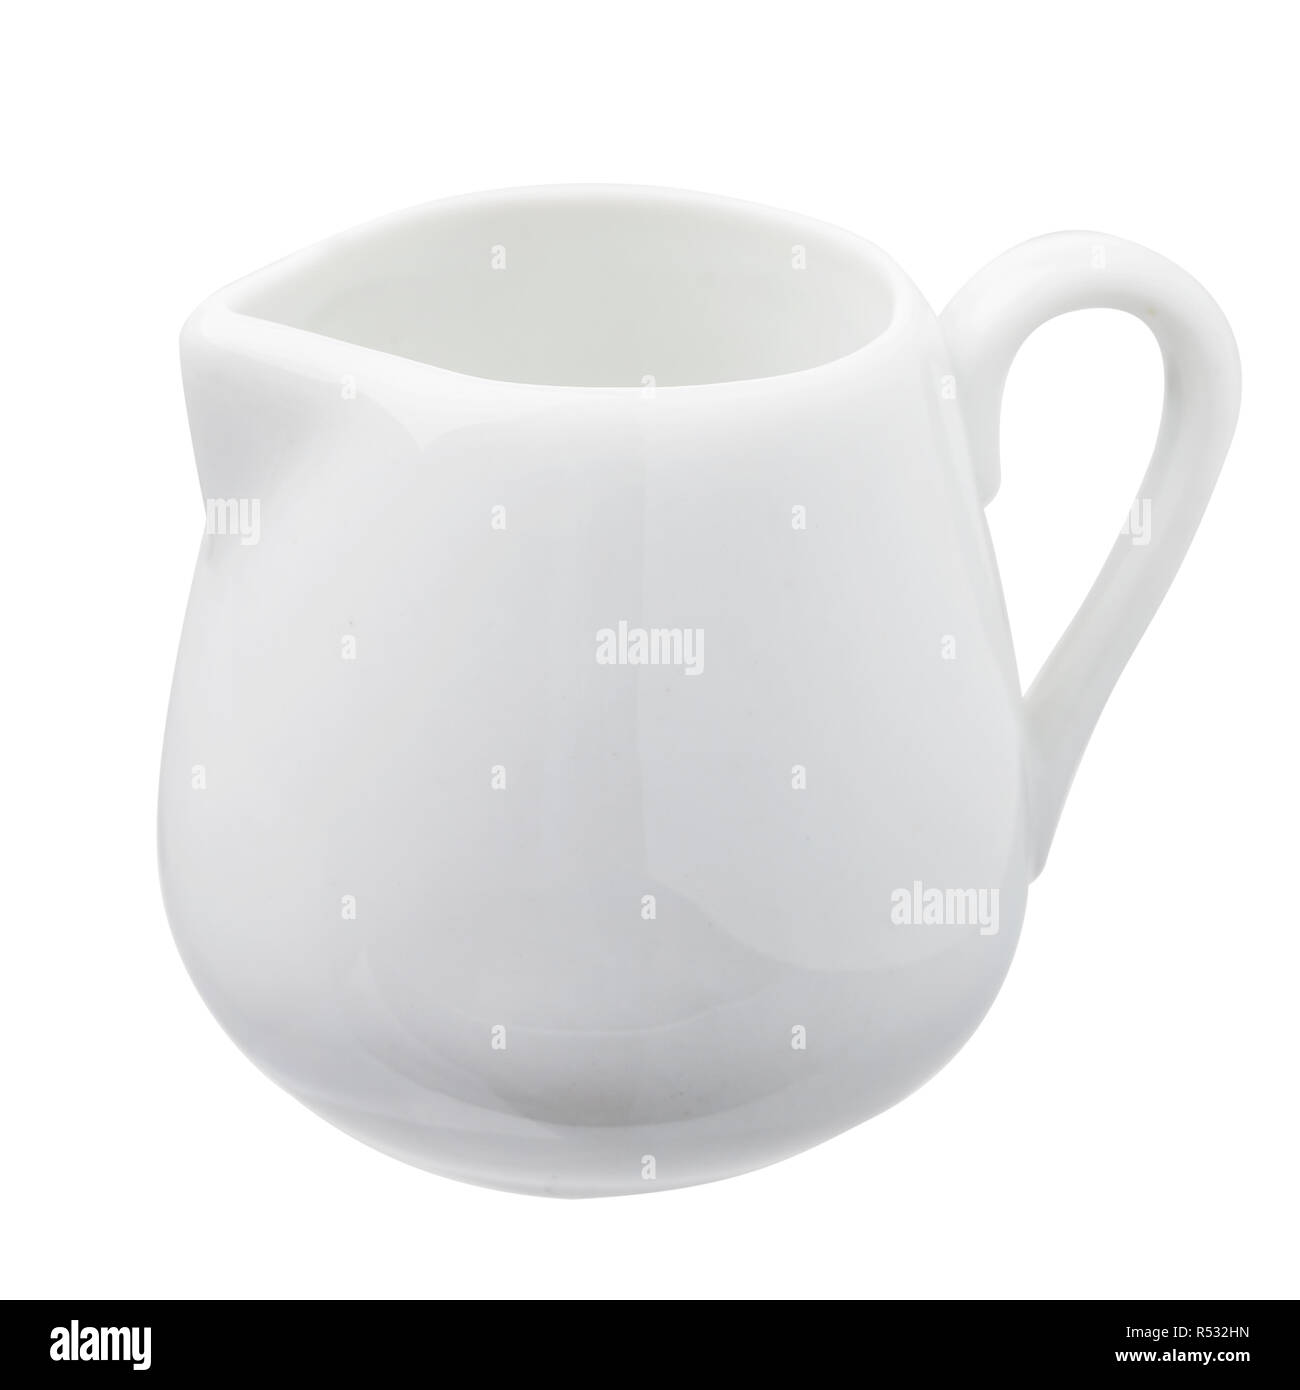 https://c8.alamy.com/comp/R532HN/ceramic-utensil-for-milk-isolated-on-white-background-R532HN.jpg